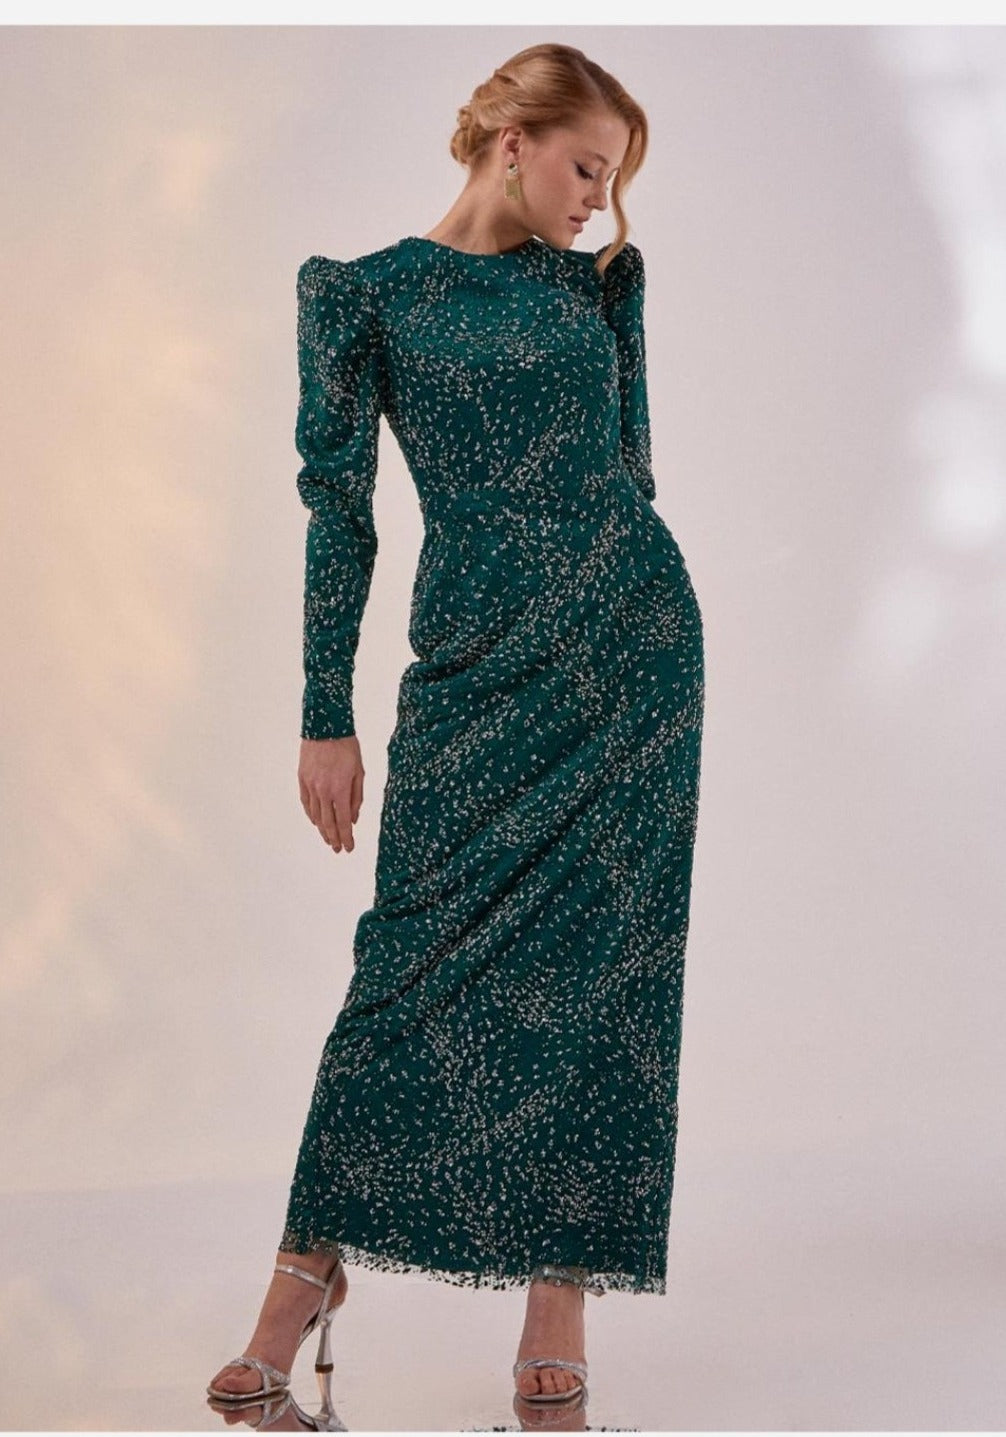 Tiara Sleeve Evening Dress 260840-84